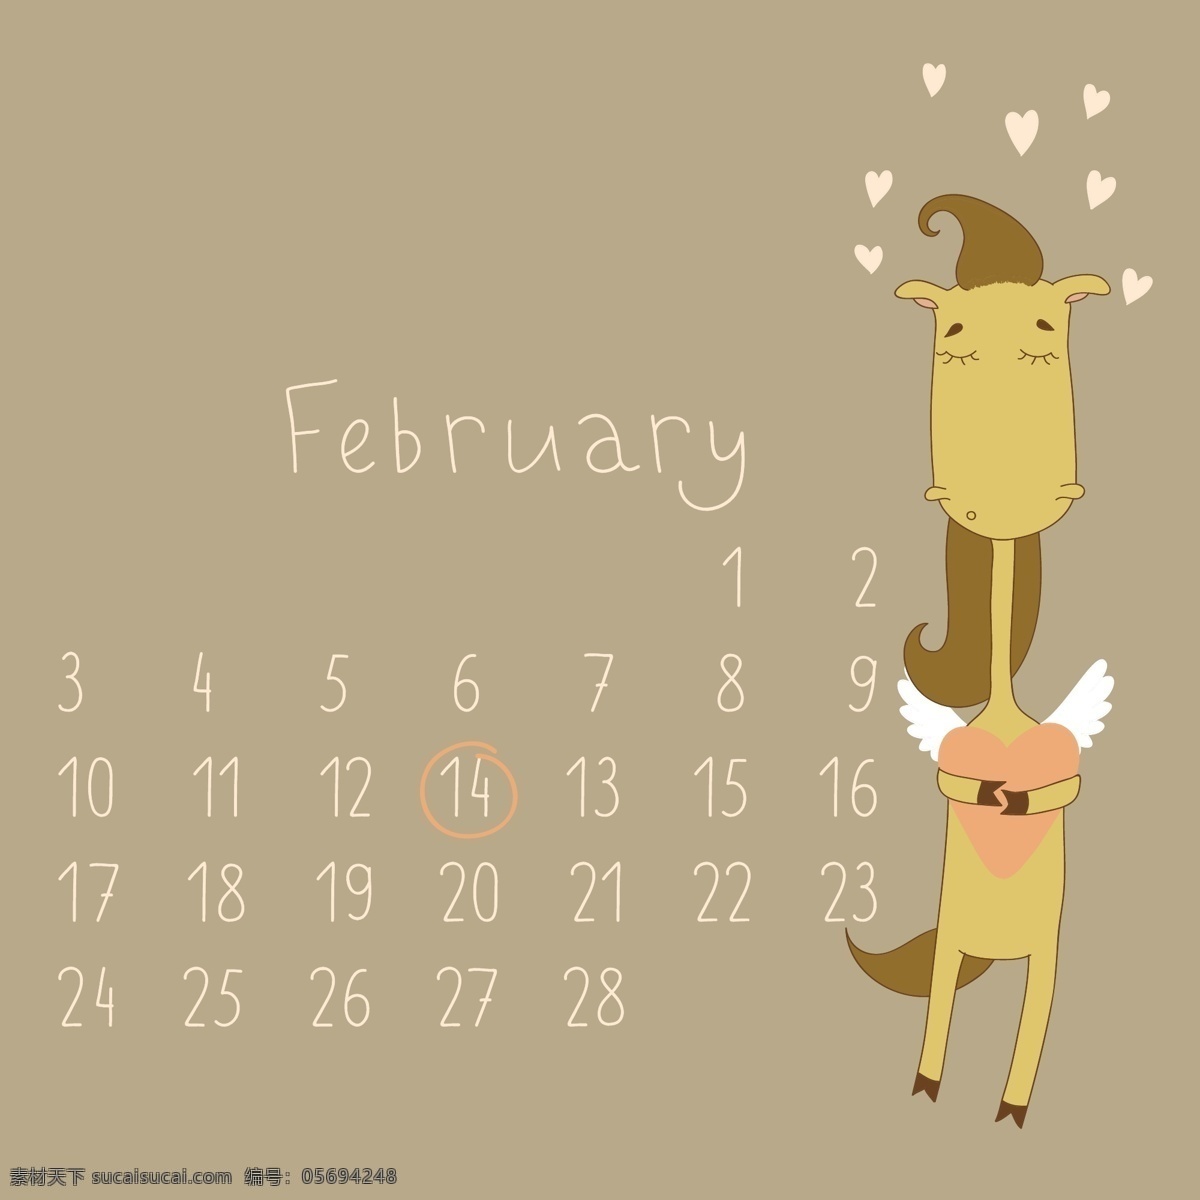 可爱 的卡 通 二月 月历 矢量 卡通 可爱的 可爱的卡通 日历 矢量节日 节日素材 其他节日